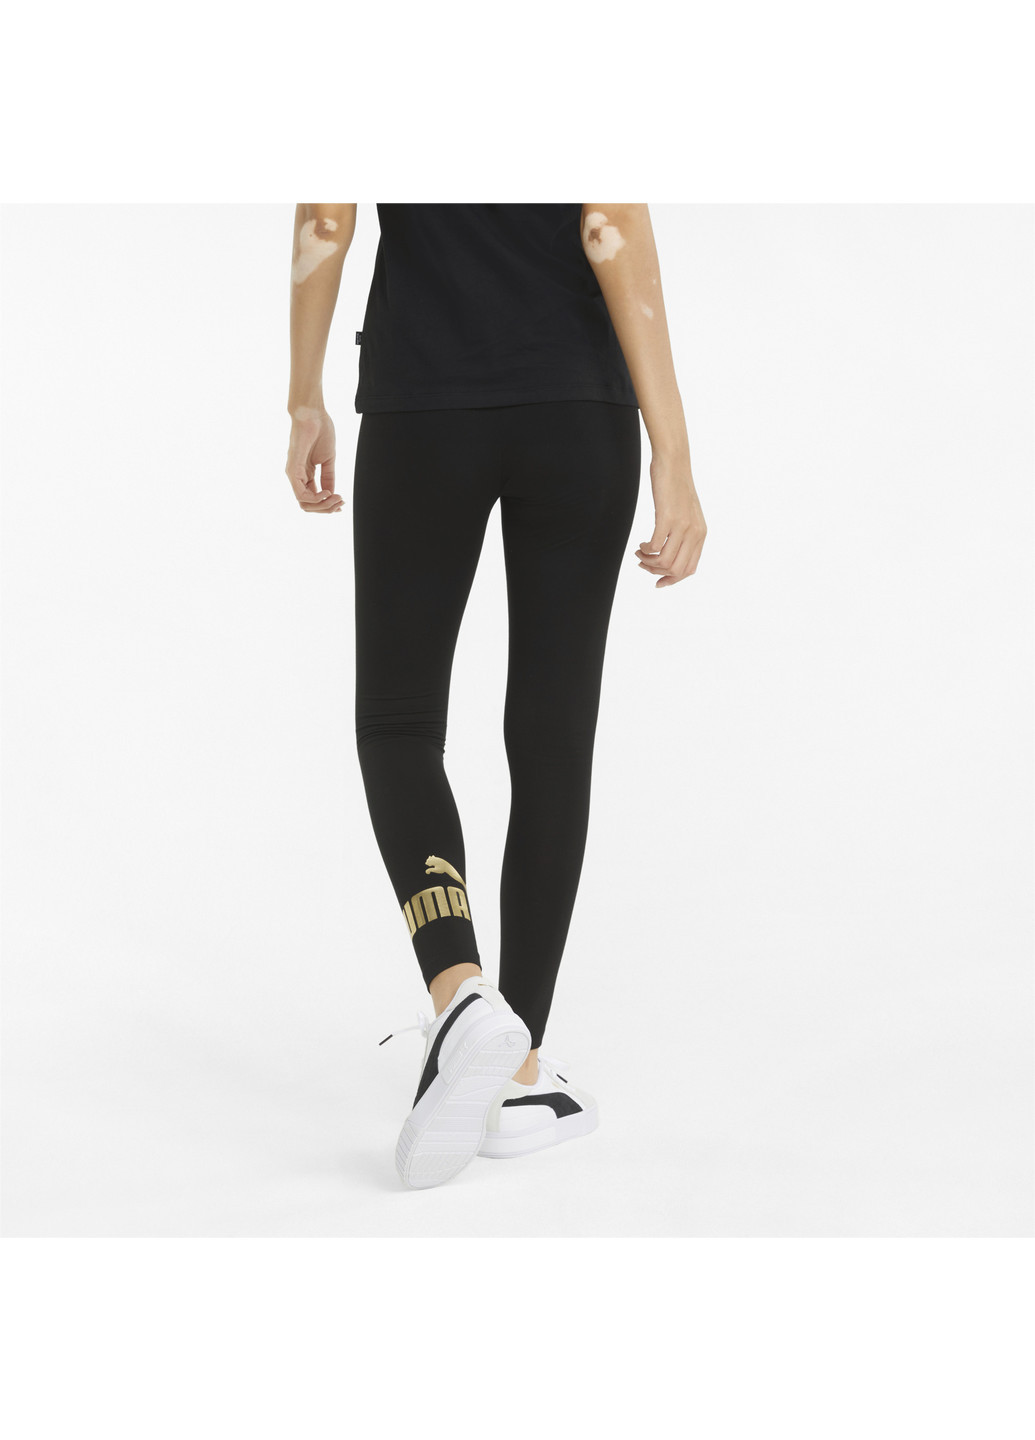 Черные демисезонные леггинсы essentials+ metallic women’s leggings Puma